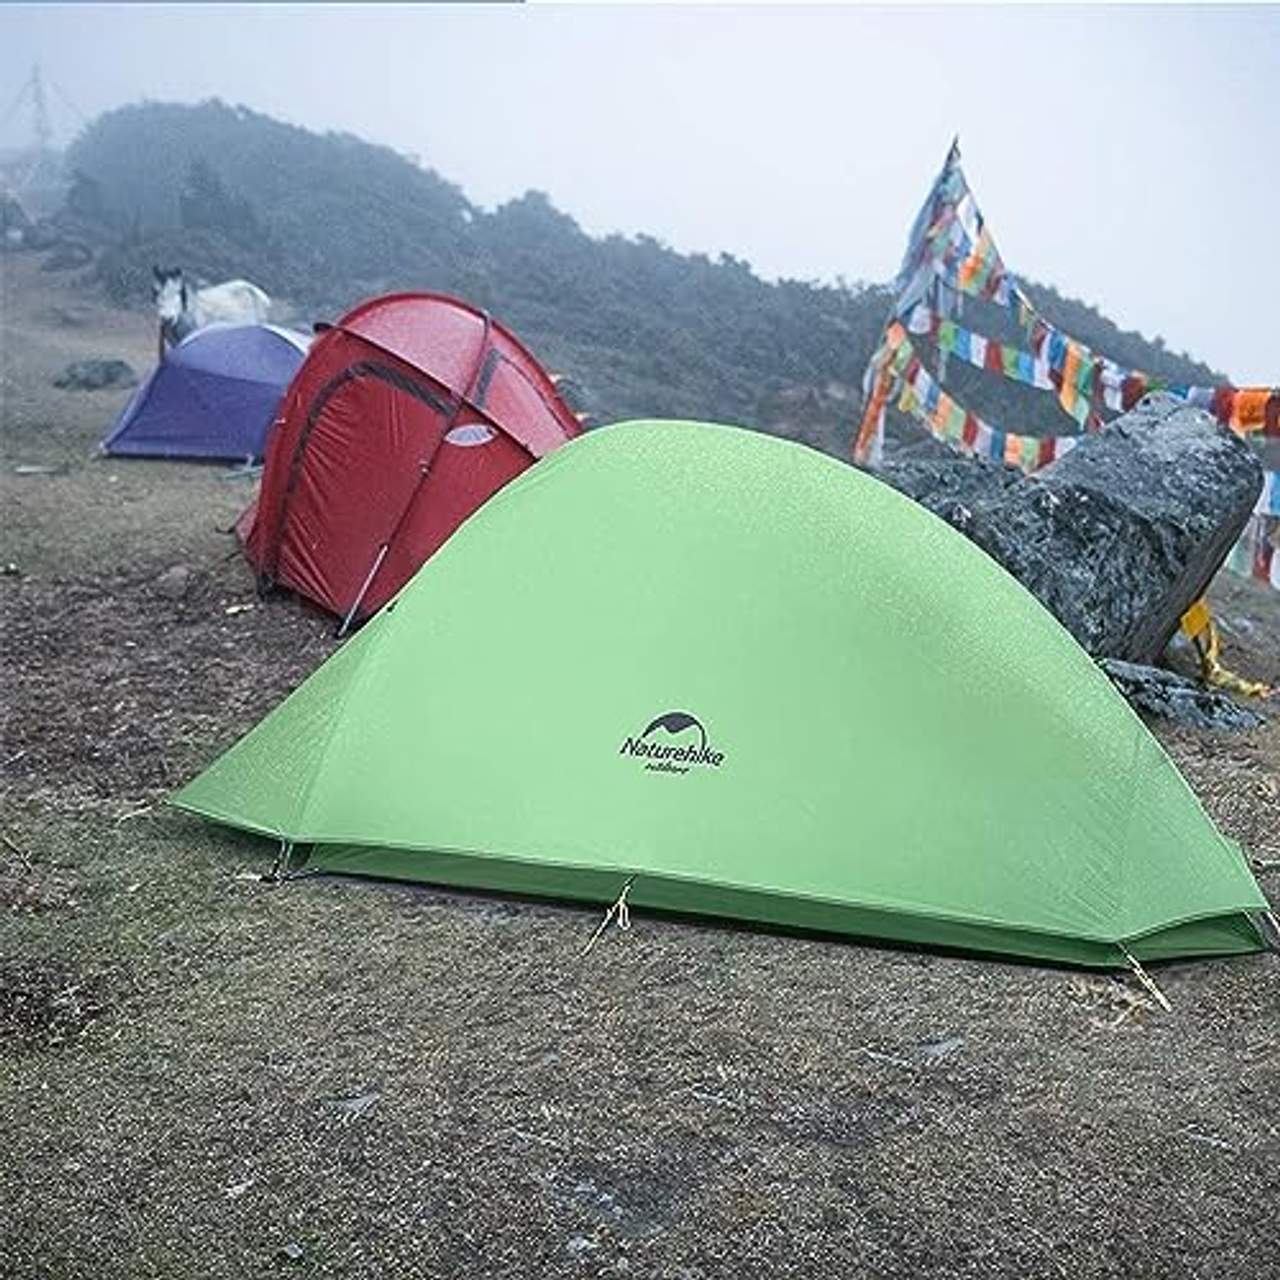 Naturehike Cloud-up Ultraleichte 1 Personen Single Zelt 3-4 Saison Camping